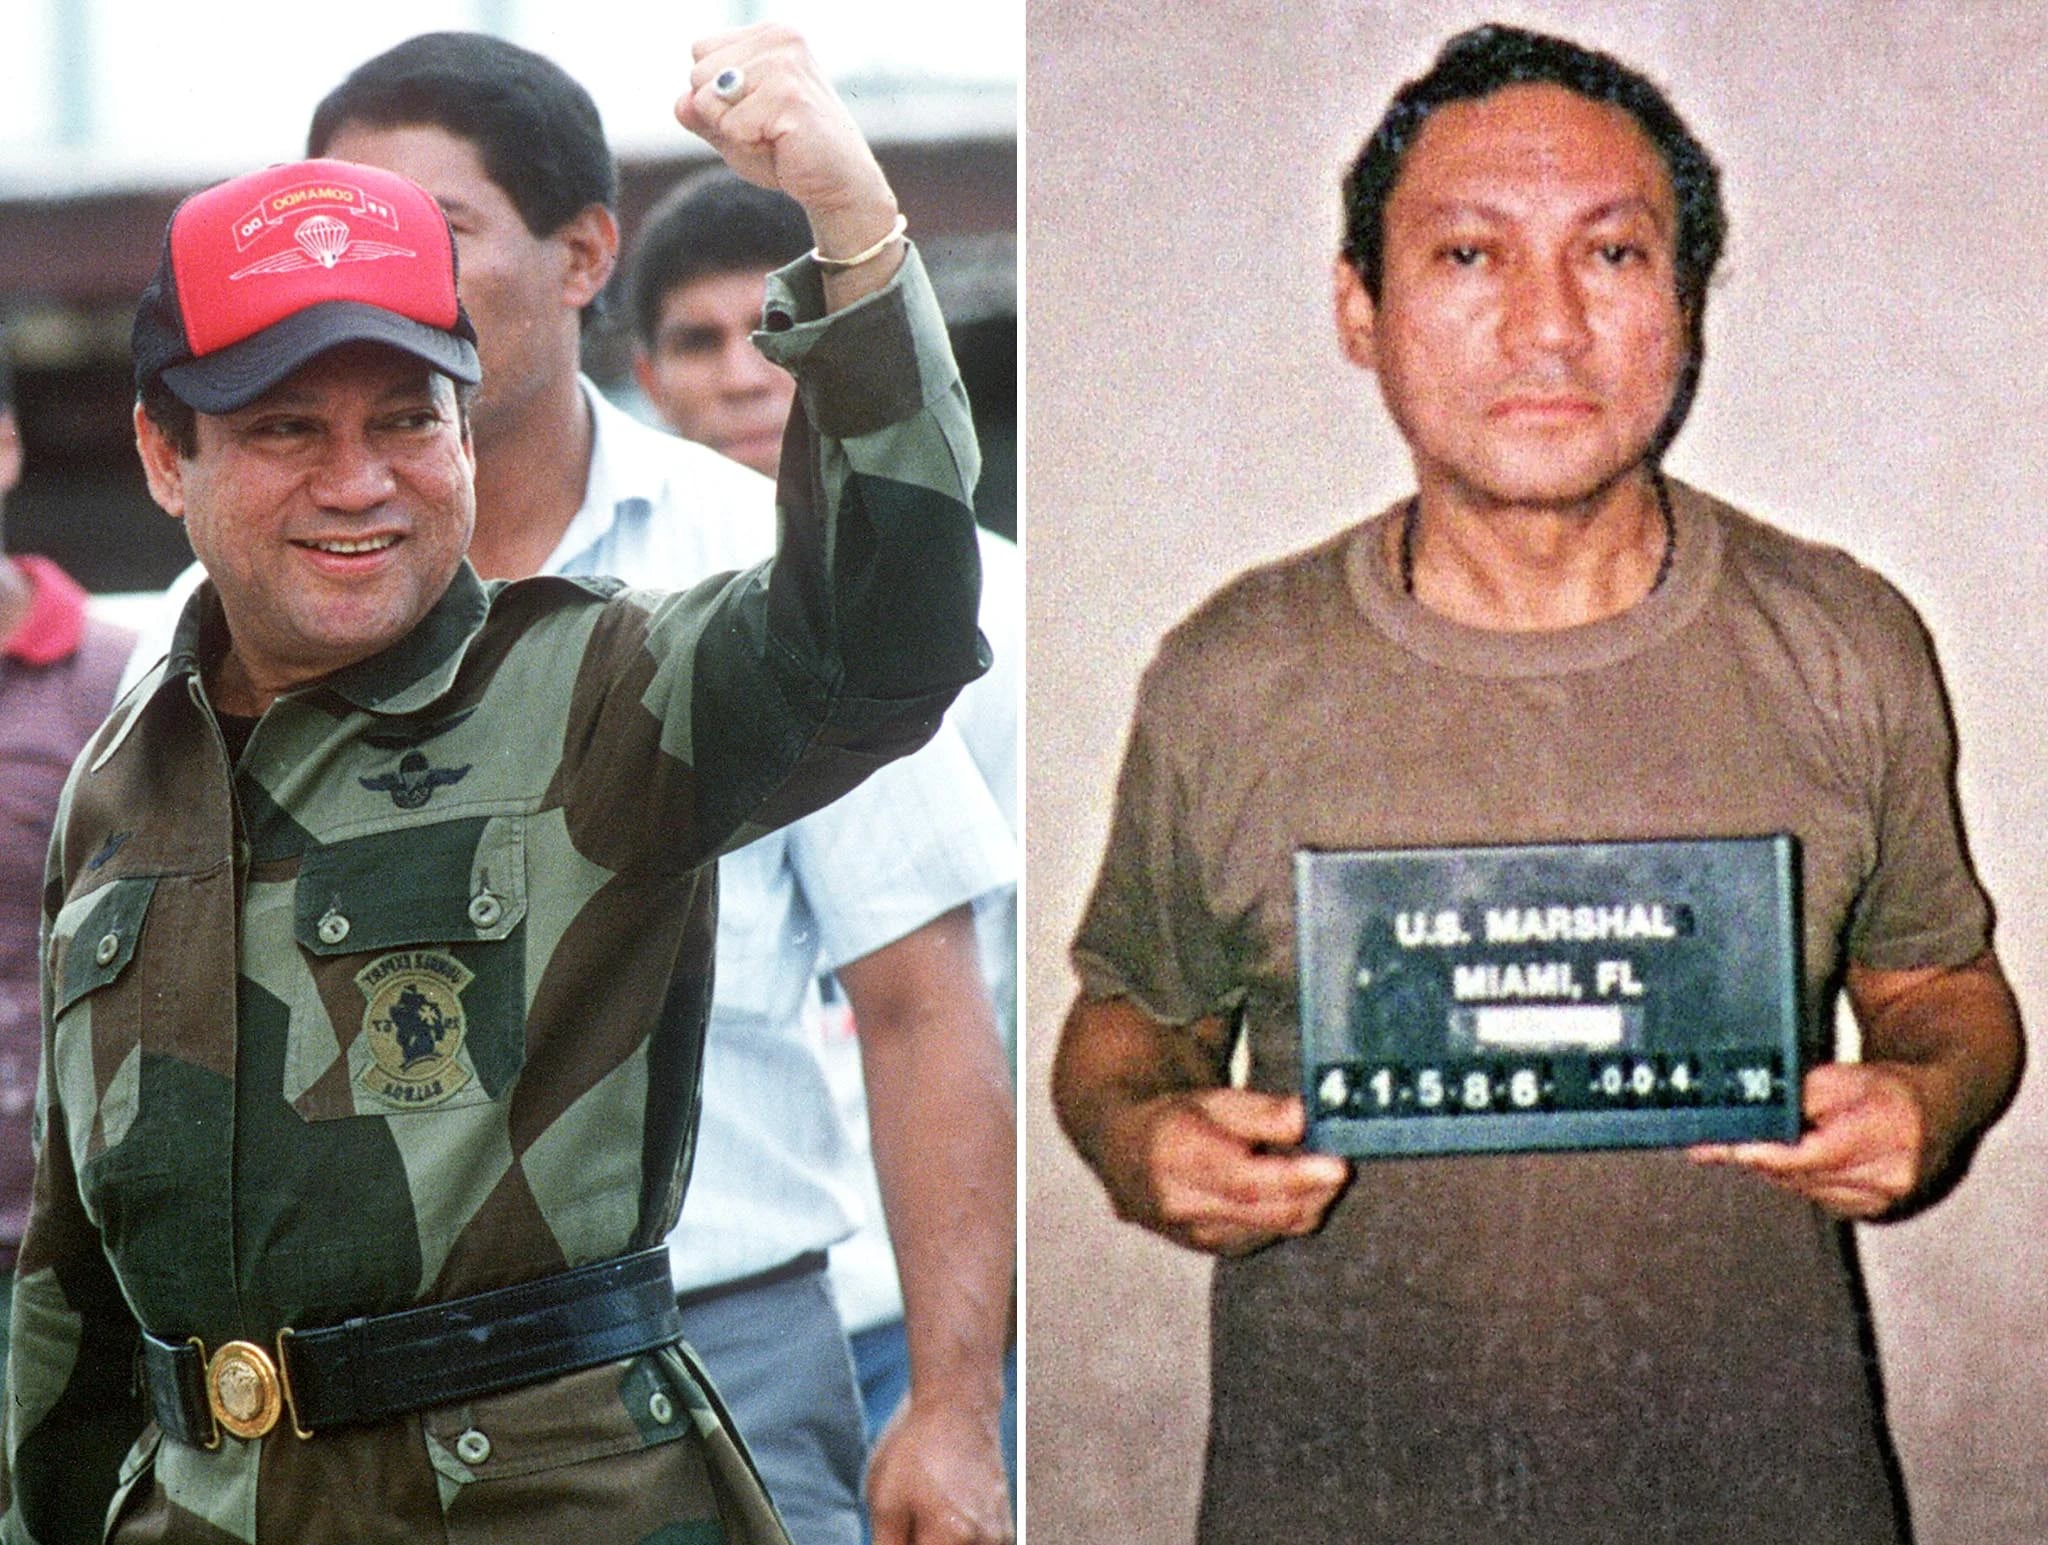 Fotos tomadas el 4 de octubre de 1989 en Panama (izquierda) y el 4 de enero de 1990 en Miami (derecha). (AFP)